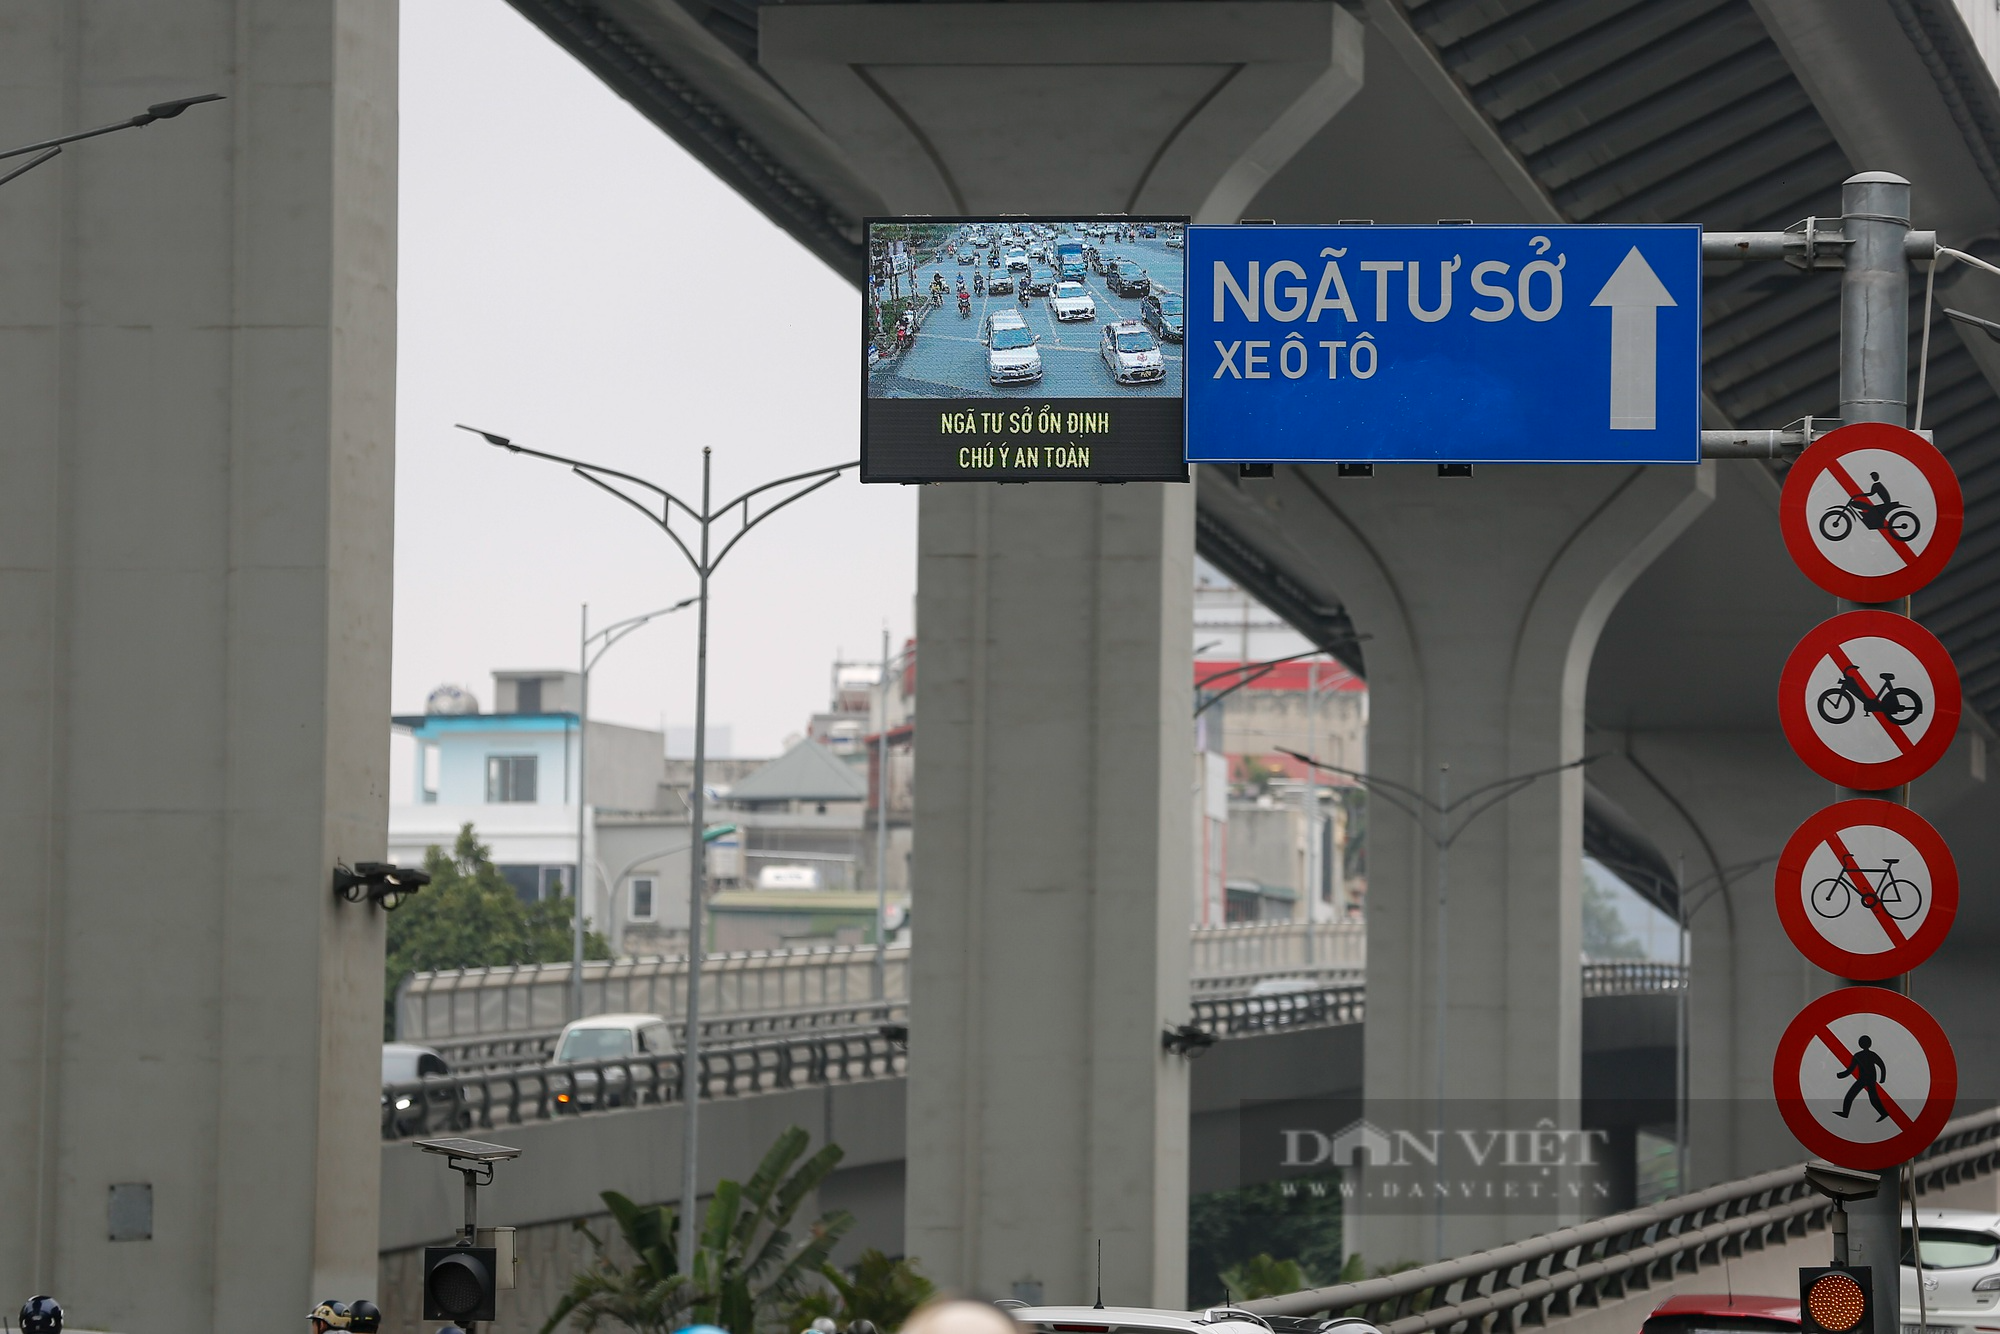 Mục sở thị biển báo giao thông điện tử Hà Nội đang thí điểm nhằm giảm ùn tắc - Ảnh 8.